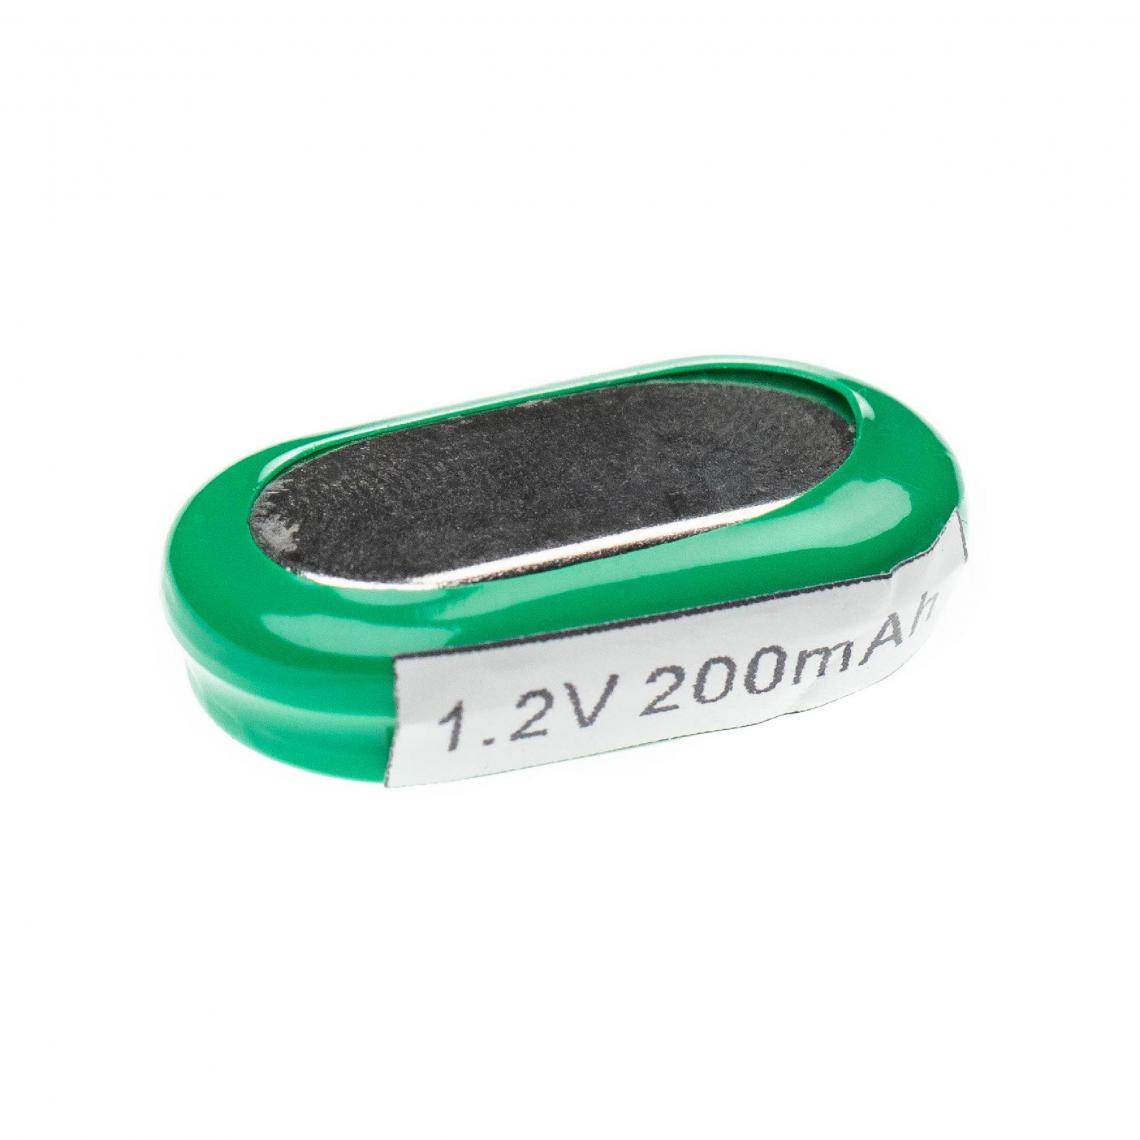 Vhbw - vhbw NiMH pile bouton de remplacement pour type V200H 200mAh 1,2V convient pour les batteries de modélisme etc. - Autre appareil de mesure